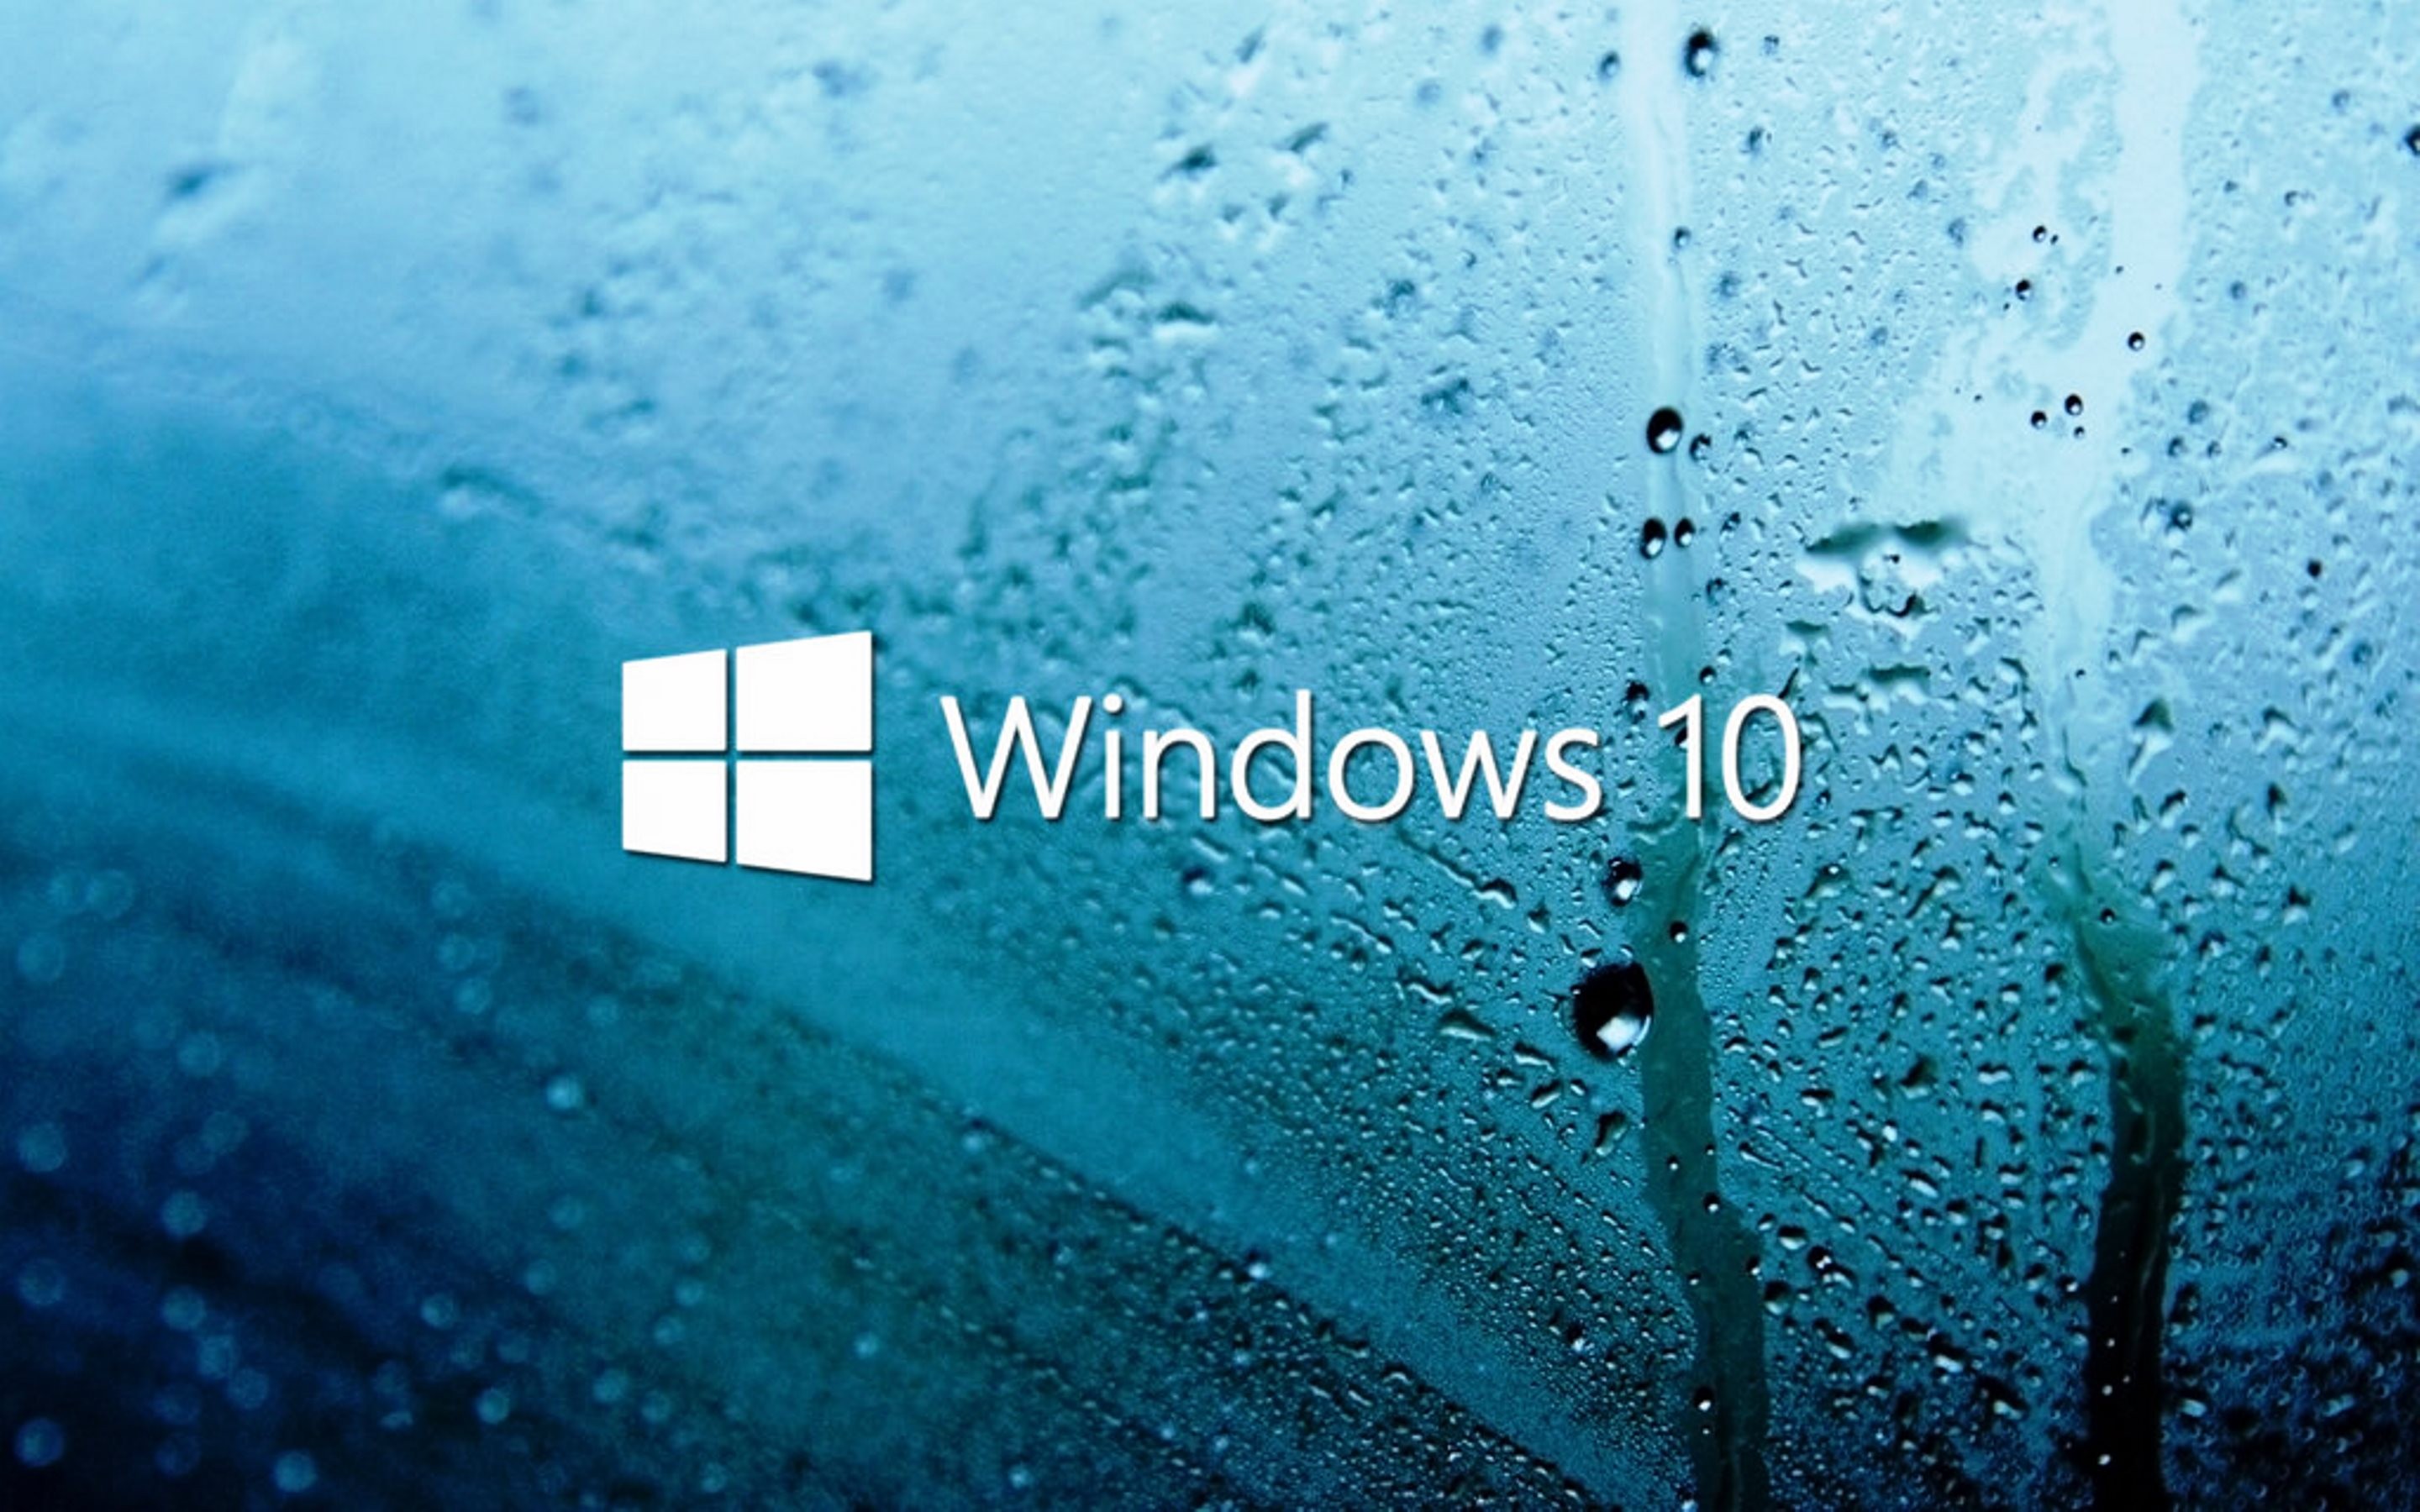 Thưởng thức miễn phí hàng trăm bức ảnh nền Windows 10 mới nhất để trang trí màn hình desktop của bạn với phong cách độc đáo và tươi sáng. Nhấn vào ảnh để trải nghiệm thị giác tuyệt vời cho màn hình của bạn. Ấn tượng đúng không?